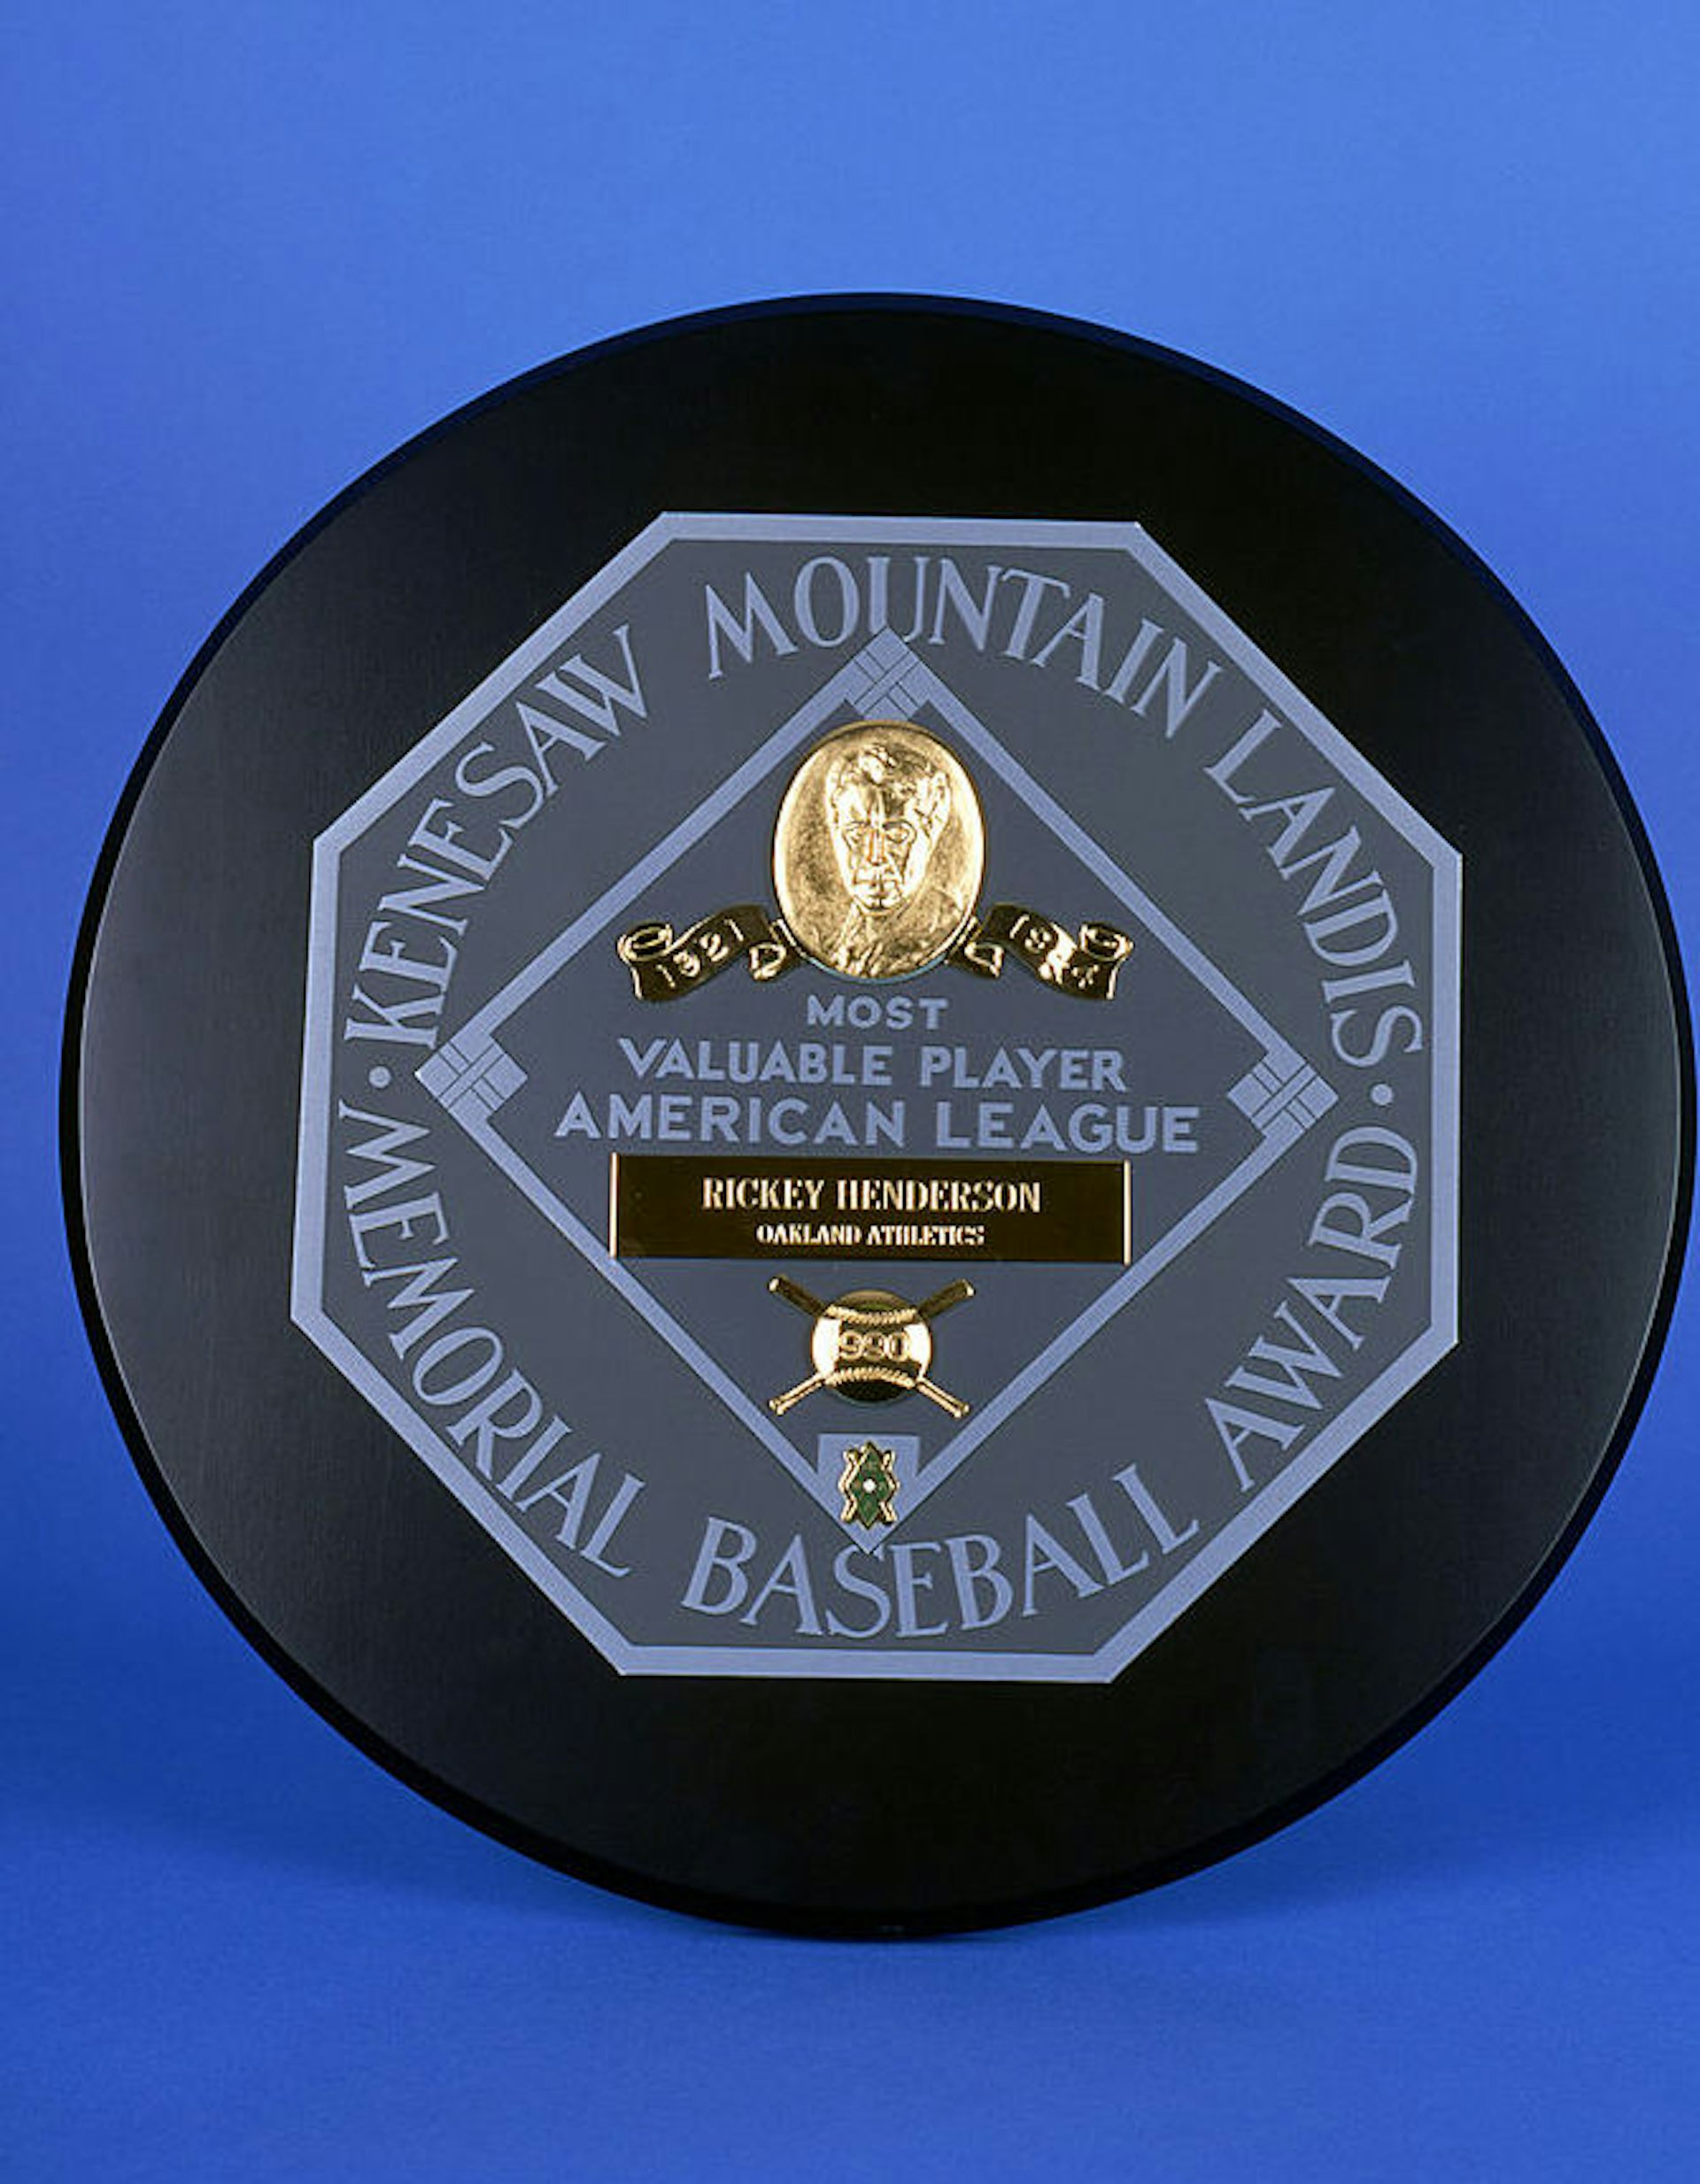  az Oakland Athletics outfieldernek ítélték oda Rickey Henderson, az 1990-es amerikai liga legértékesebb játékos díja kiemelkedően szerepel Kenesaw Mountain Landis neve.